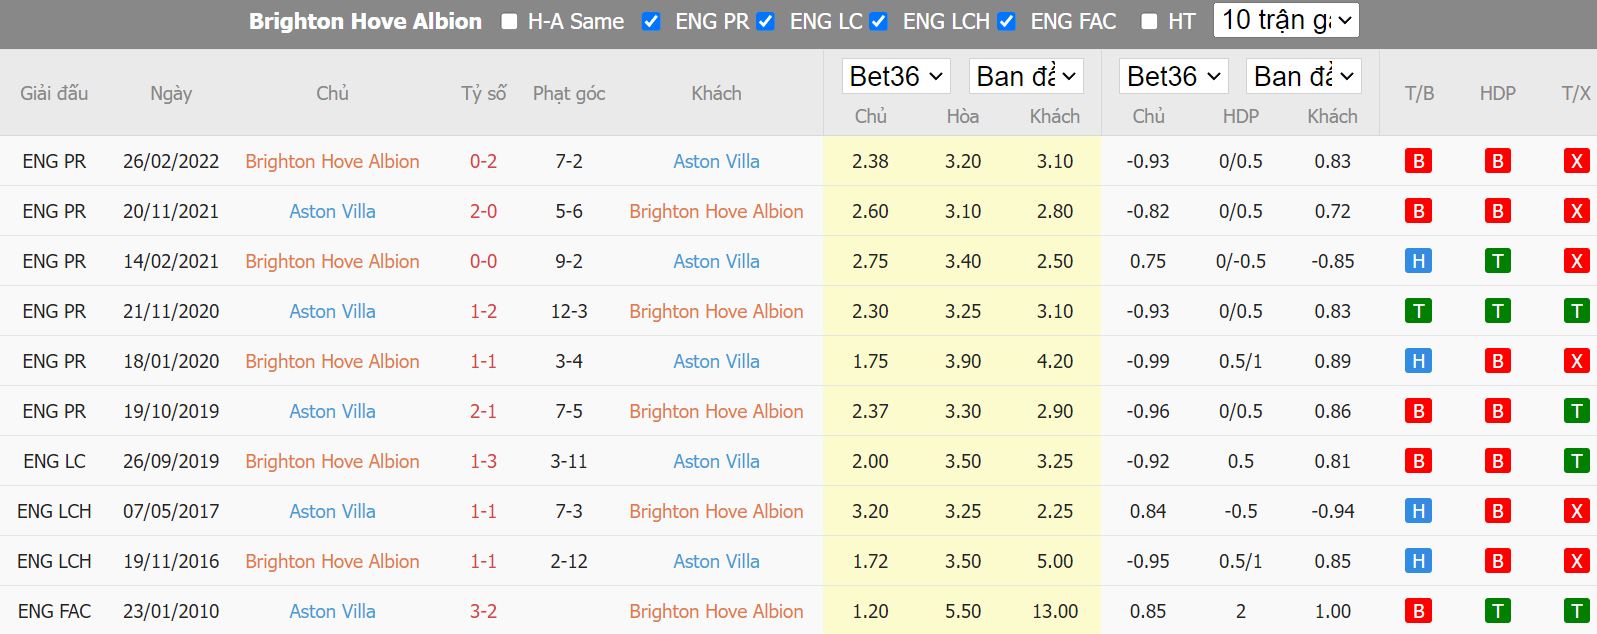 Thành tích đối đầu giữa Brighton vs Aston Villa - Ngoại Hạng Anh